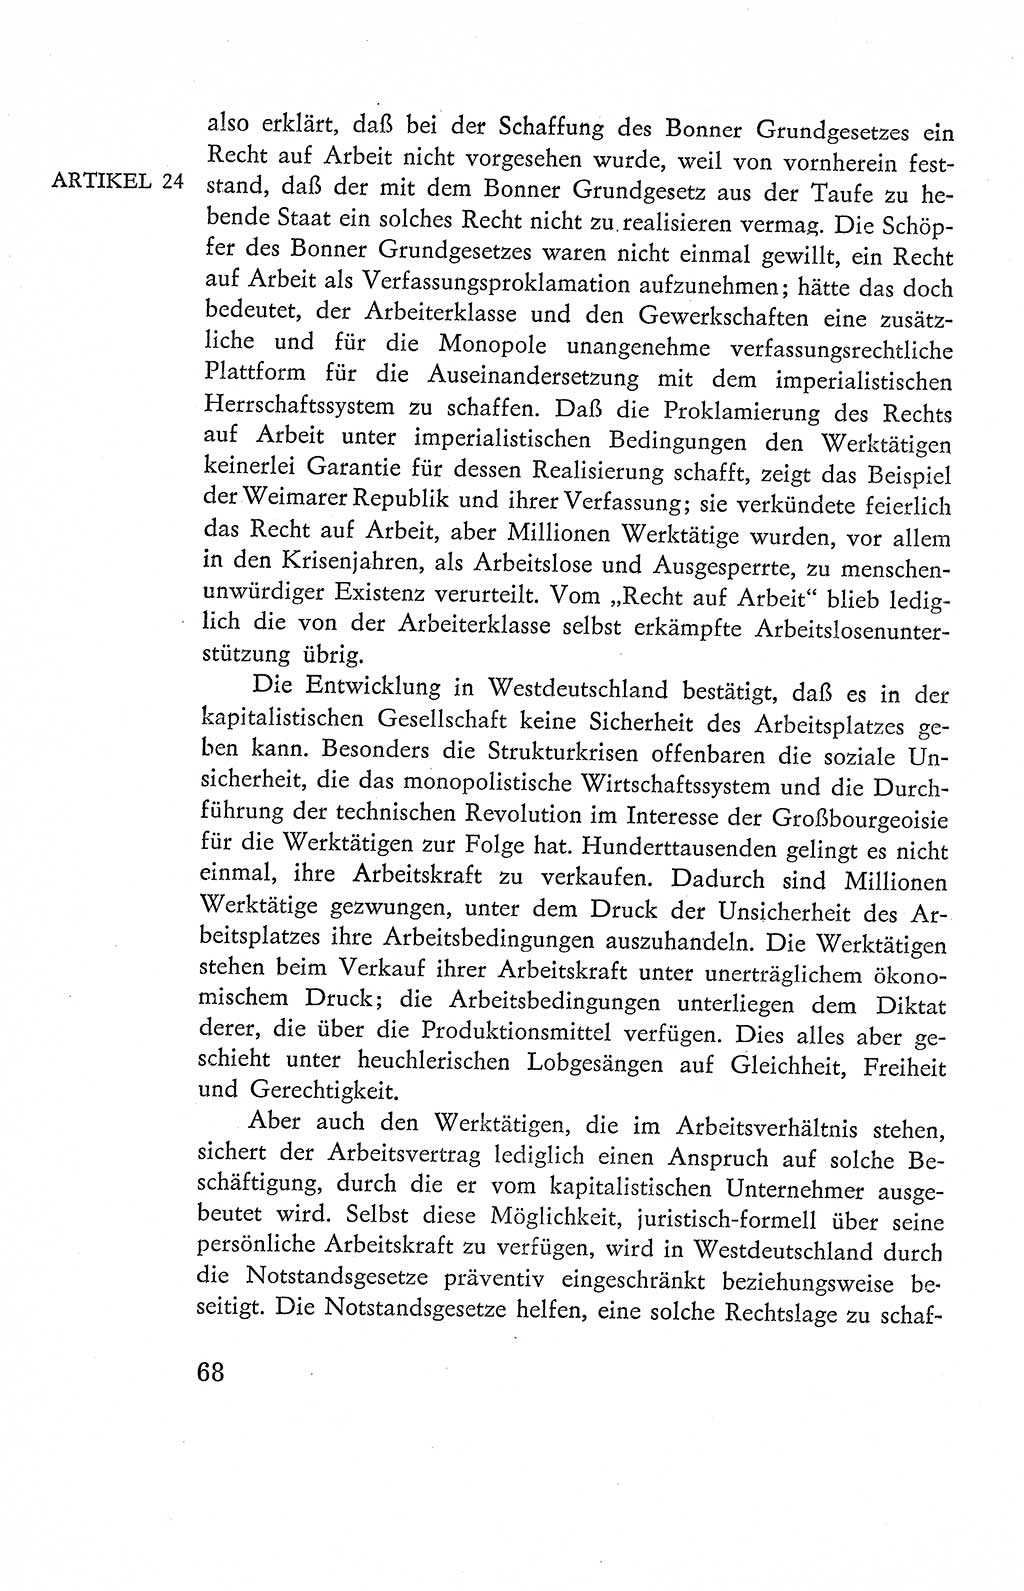 Verfassung der Deutschen Demokratischen Republik (DDR), Dokumente, Kommentar 1969, Band 2, Seite 68 (Verf. DDR Dok. Komm. 1969, Bd. 2, S. 68)